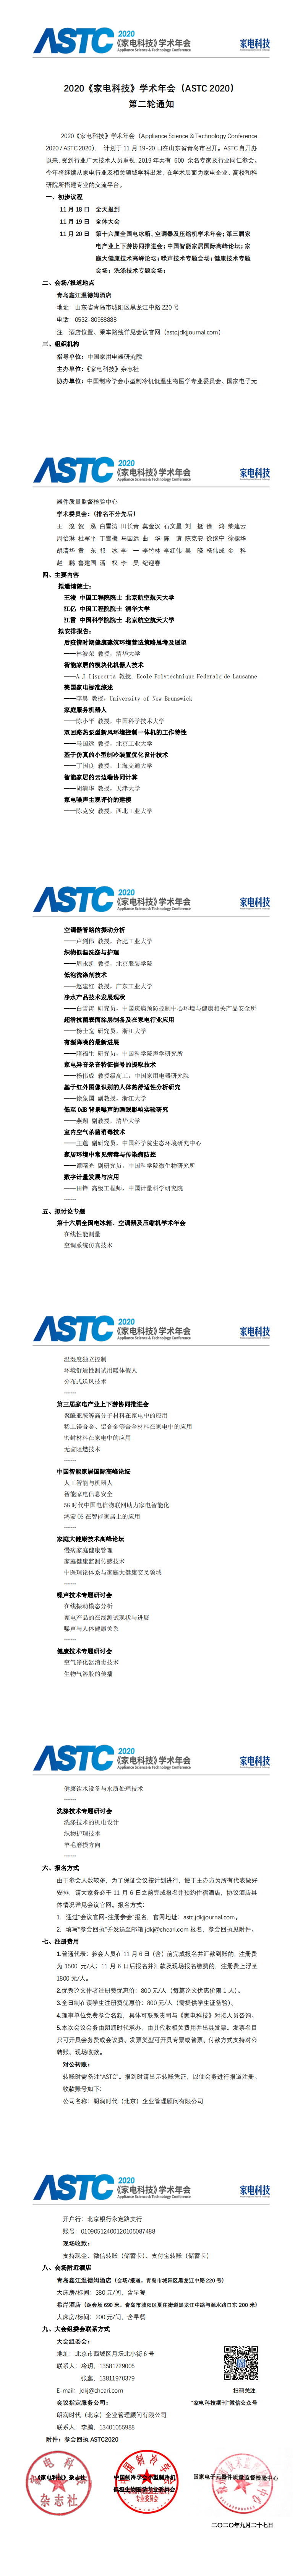 2020《家電科技》學術年會（ASTC 2020） 第二輪通知5.0_0.png